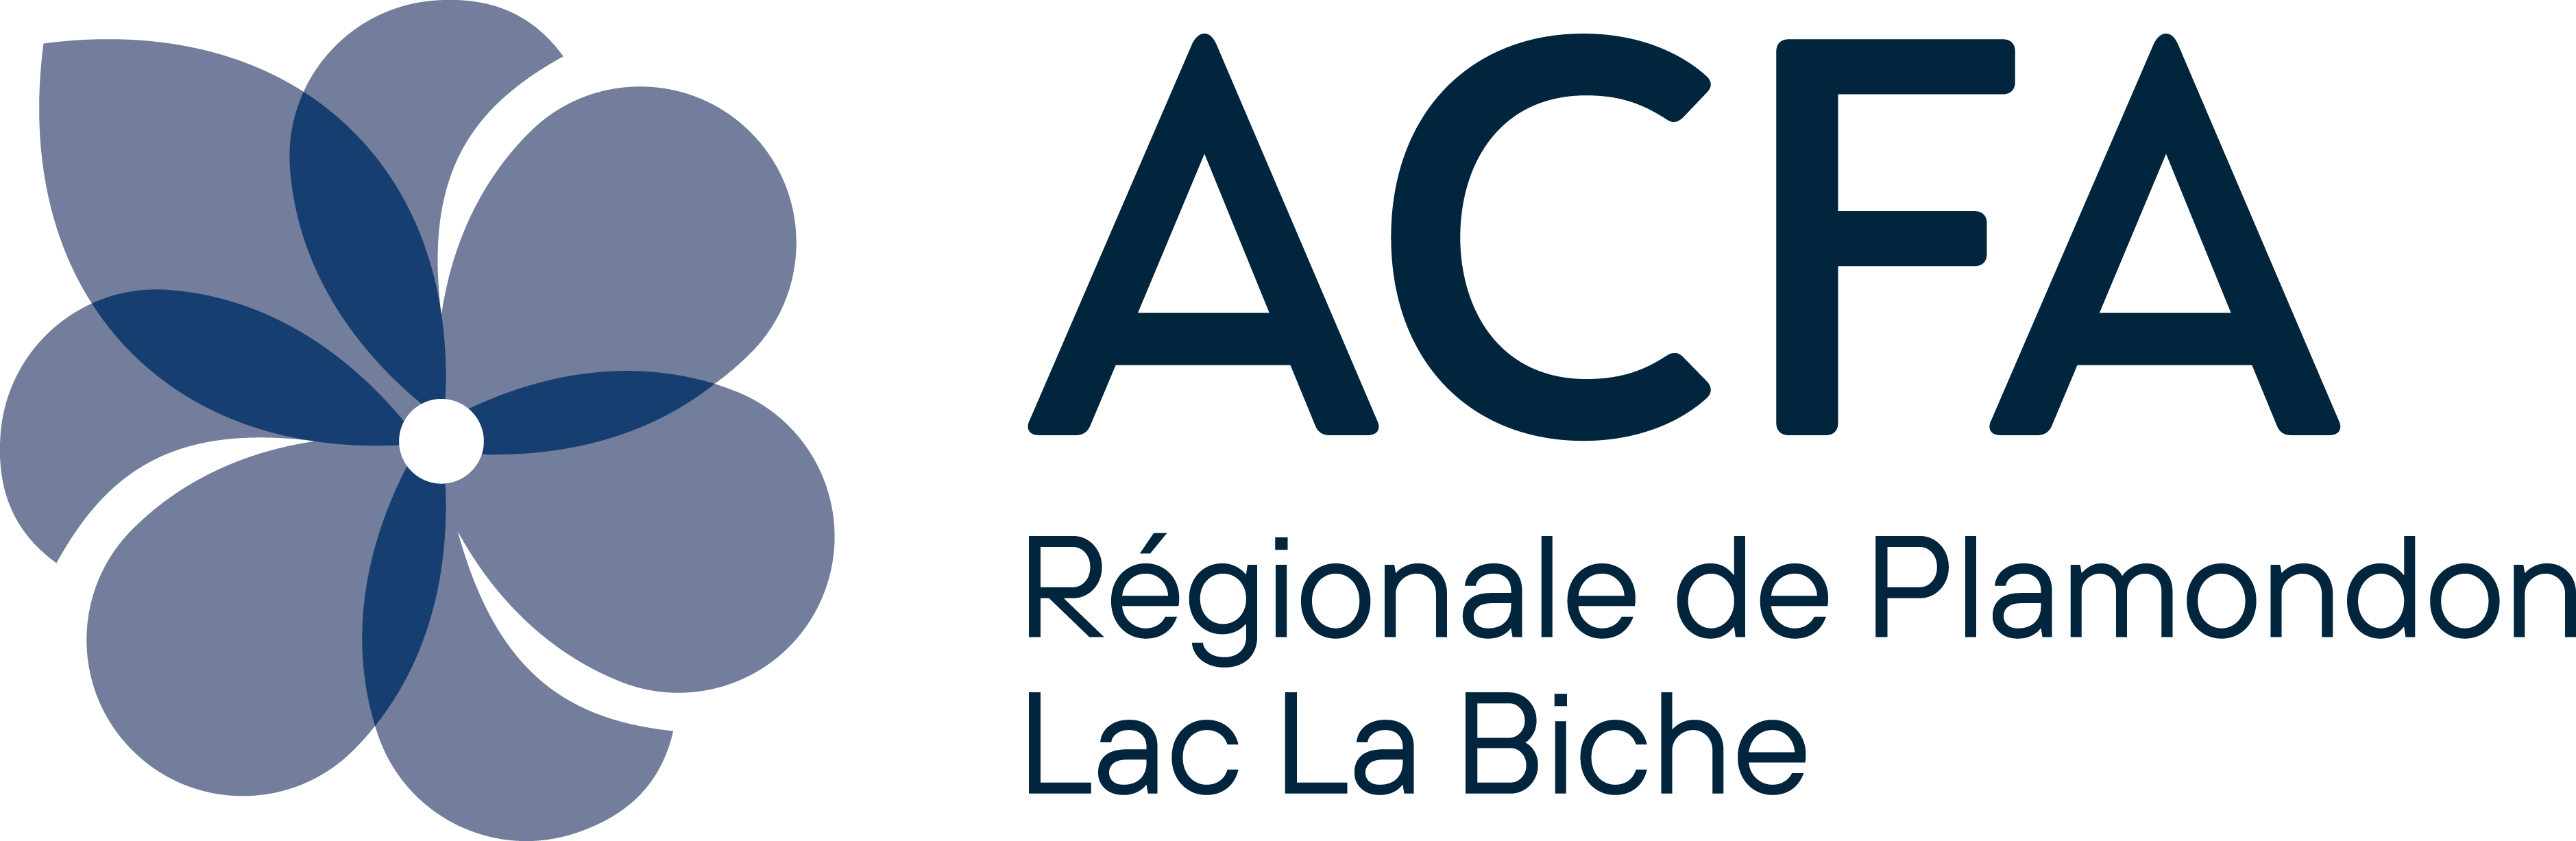 ACFA Regionale de Plamondon-Lac La Biche